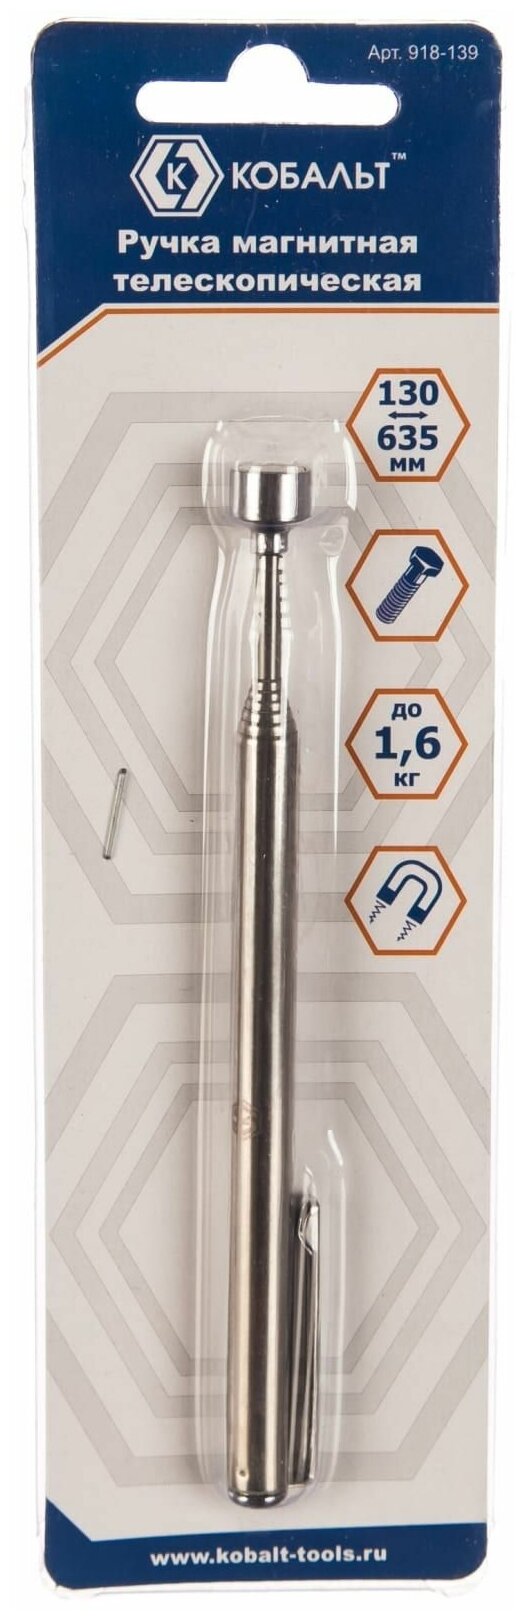 Магнитная телескопическая ручка 130 - 635 мм магнит до 1.6 кг 1 шт. блистер кобальт 918-139